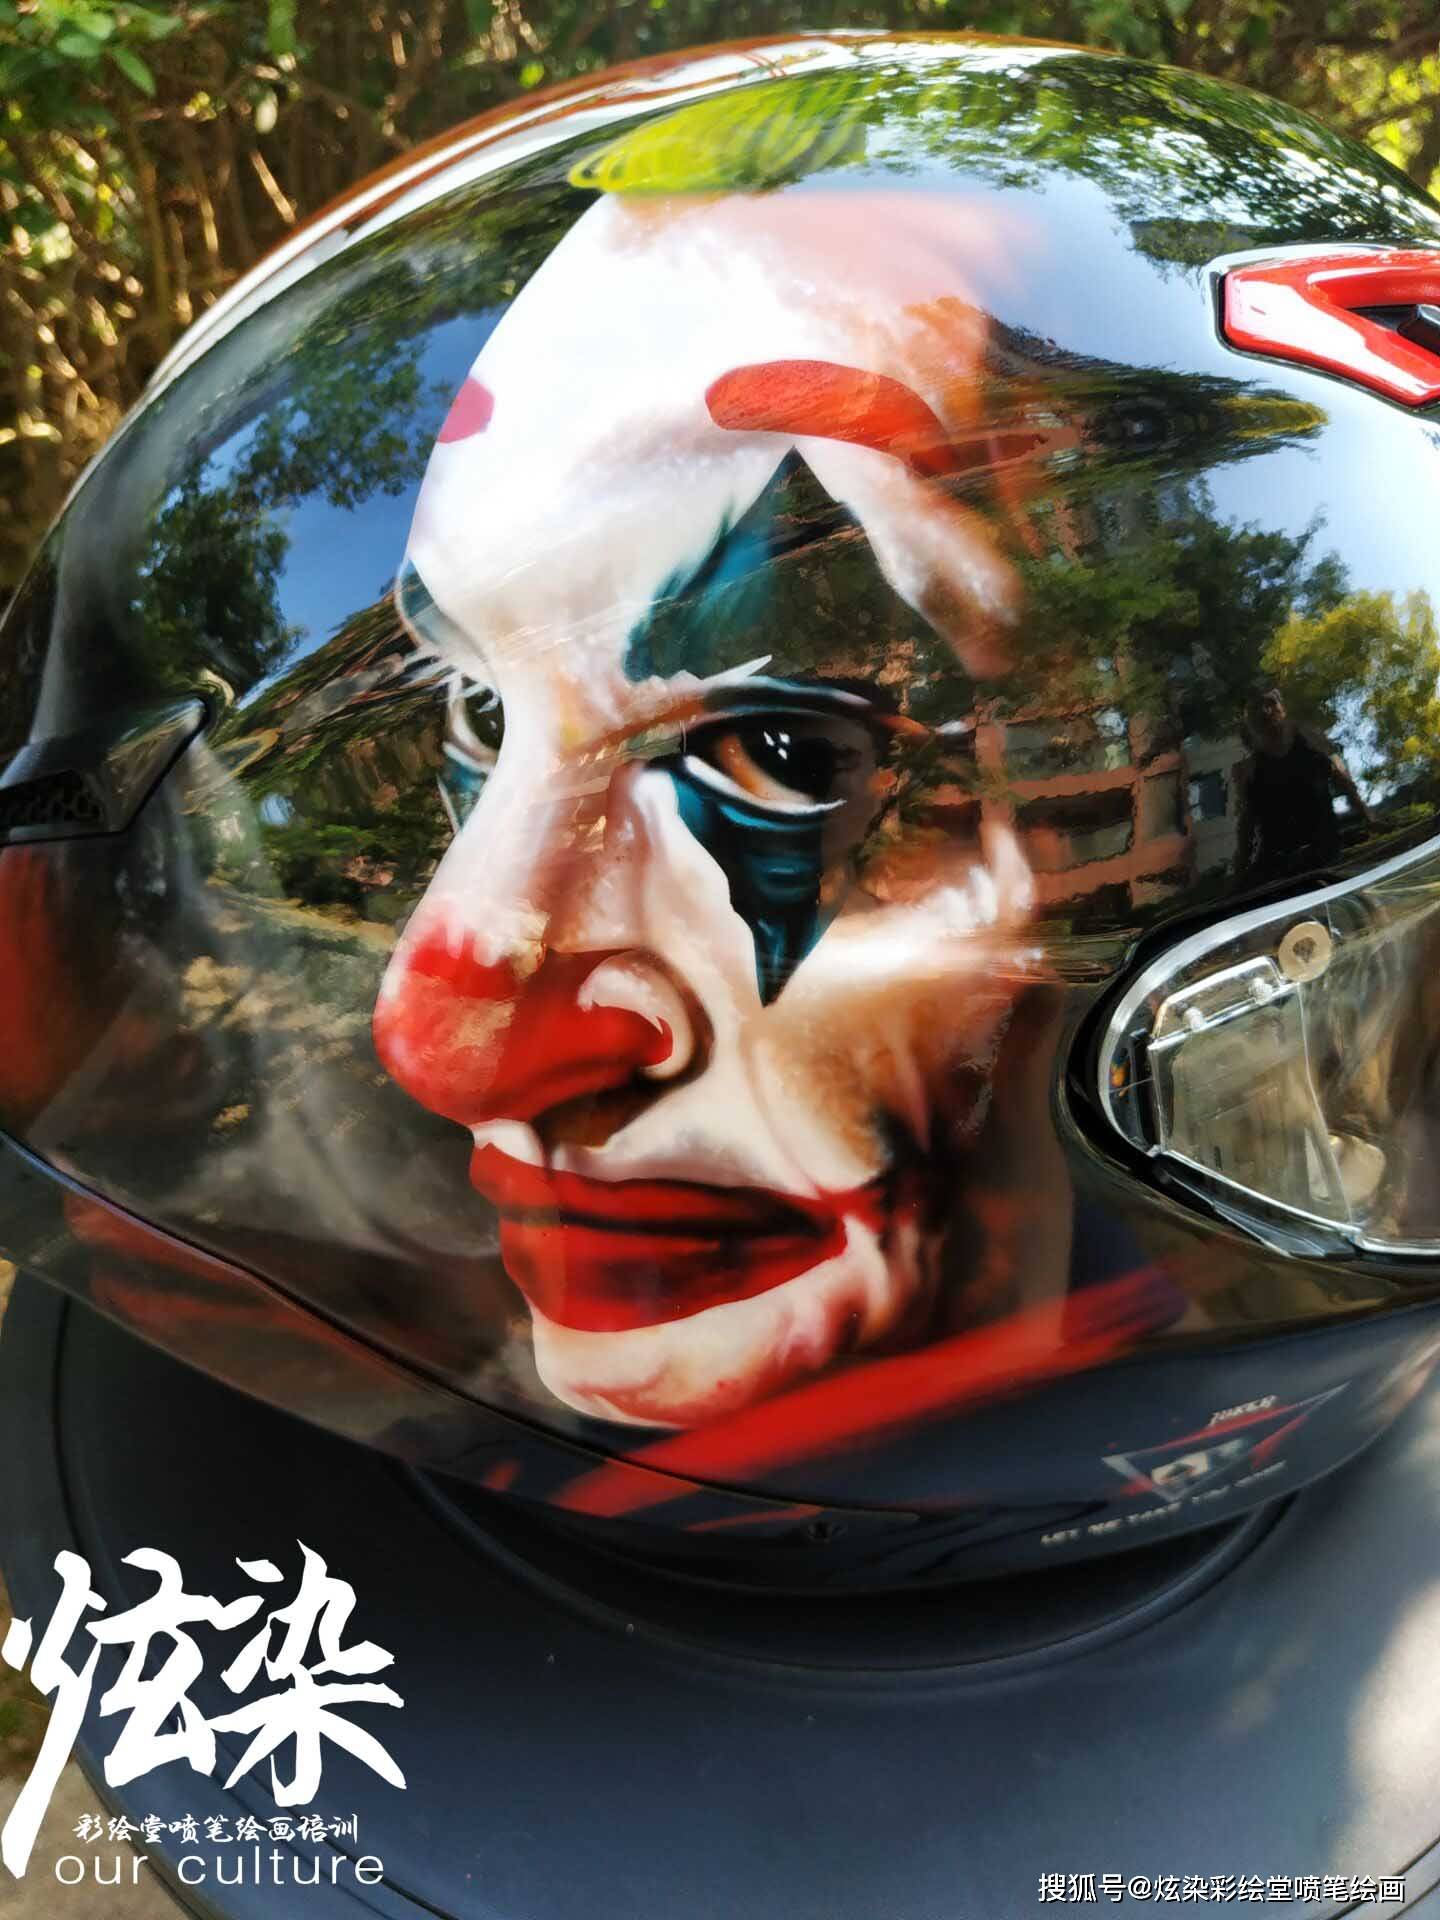 joker小丑头盔彩绘喷笔绘画彩绘